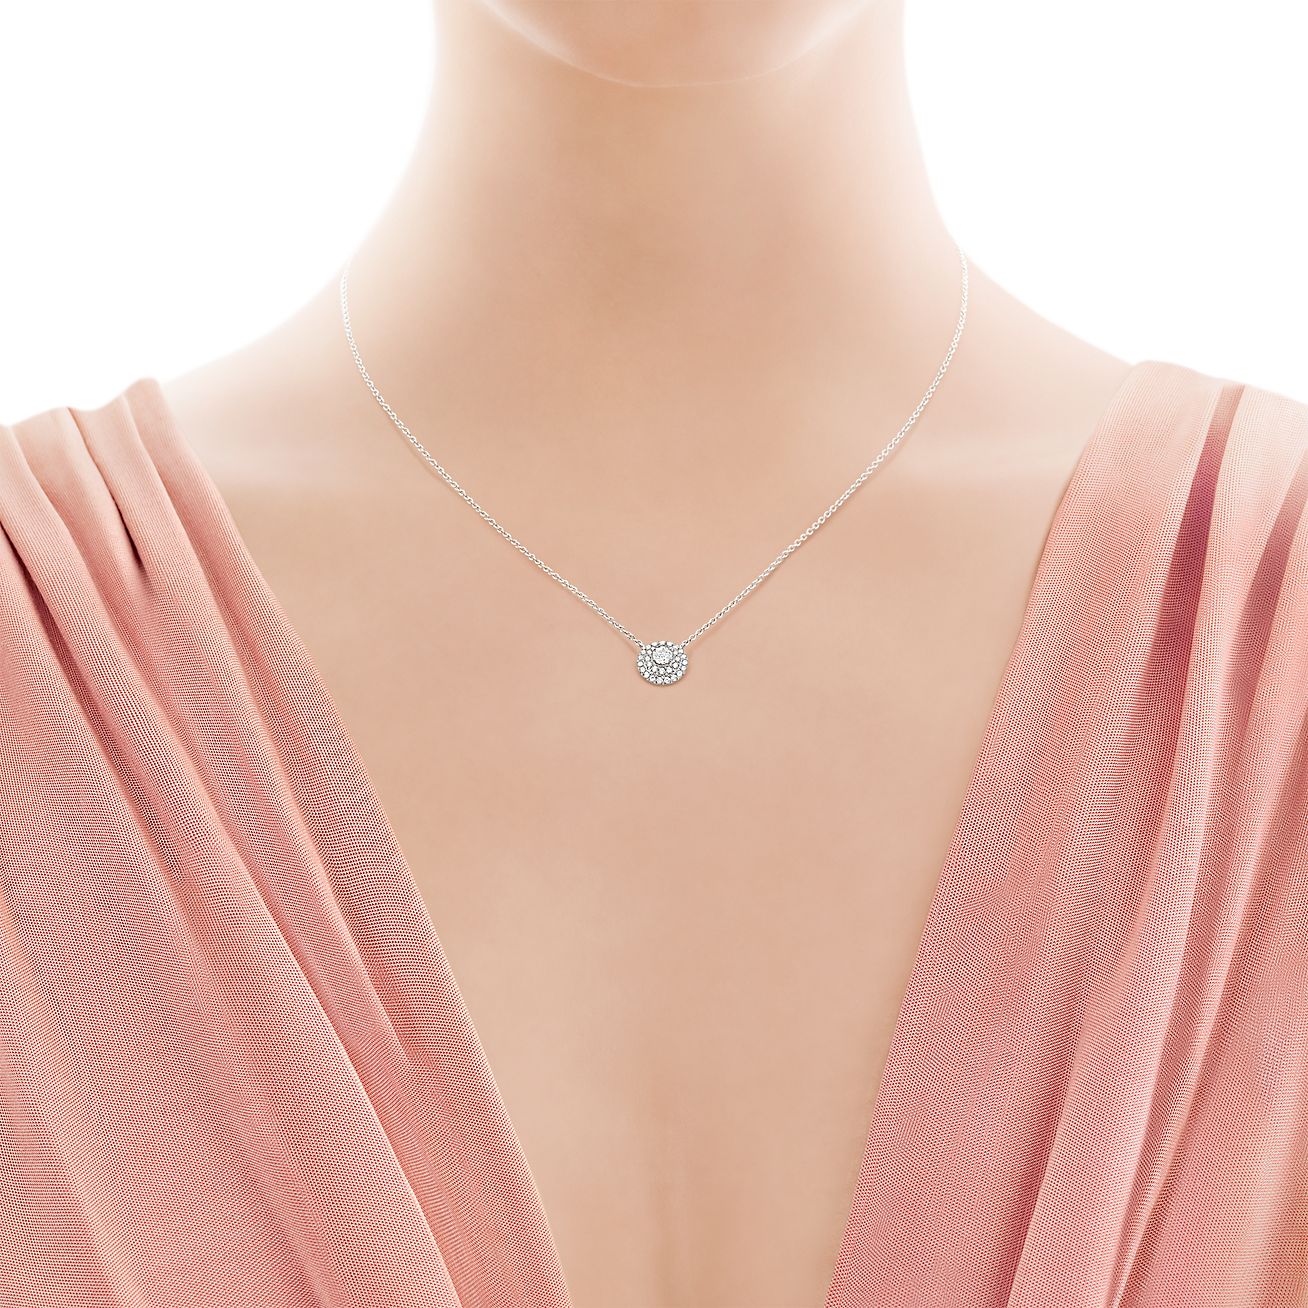 Tiffany Soleste pendant in platinum 